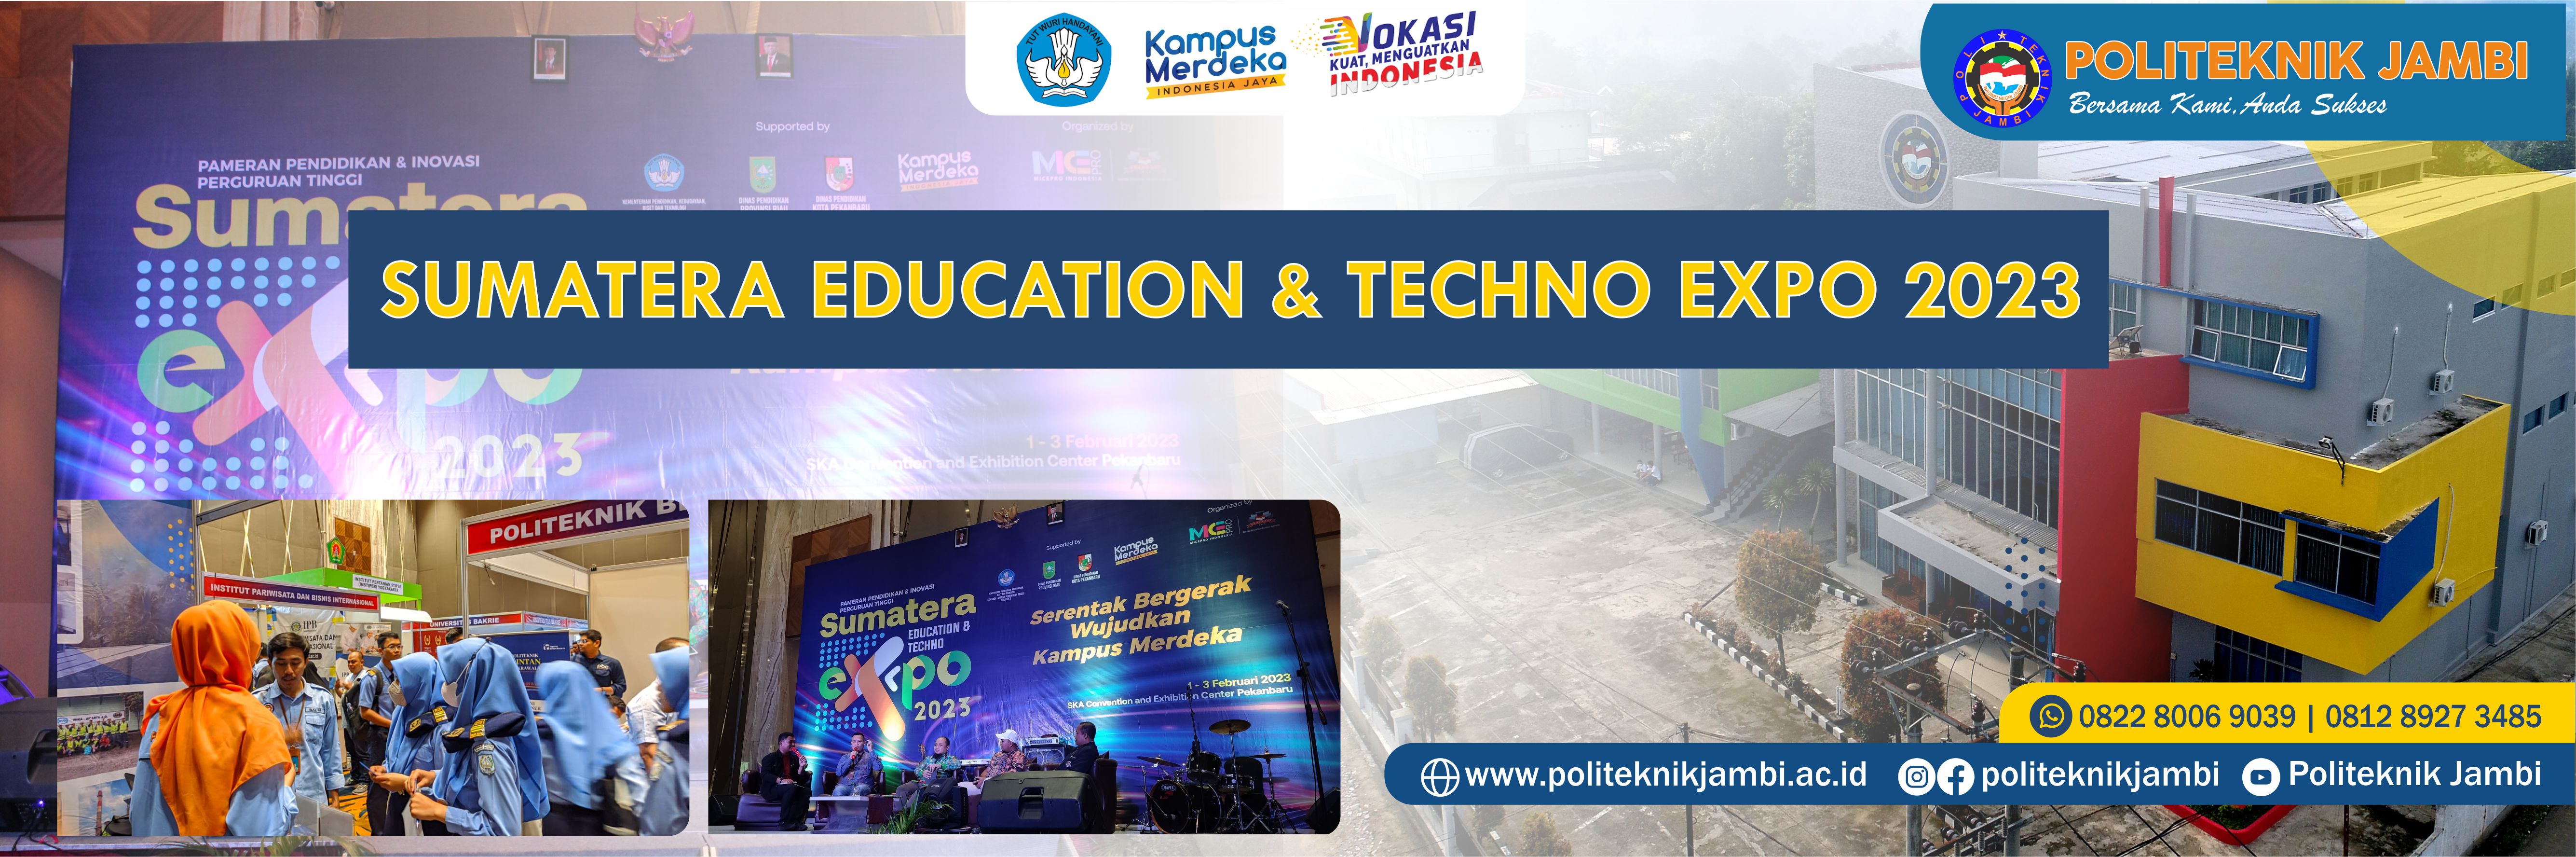 SUMATERA EDUCATION & TECHNO EXPO 2023